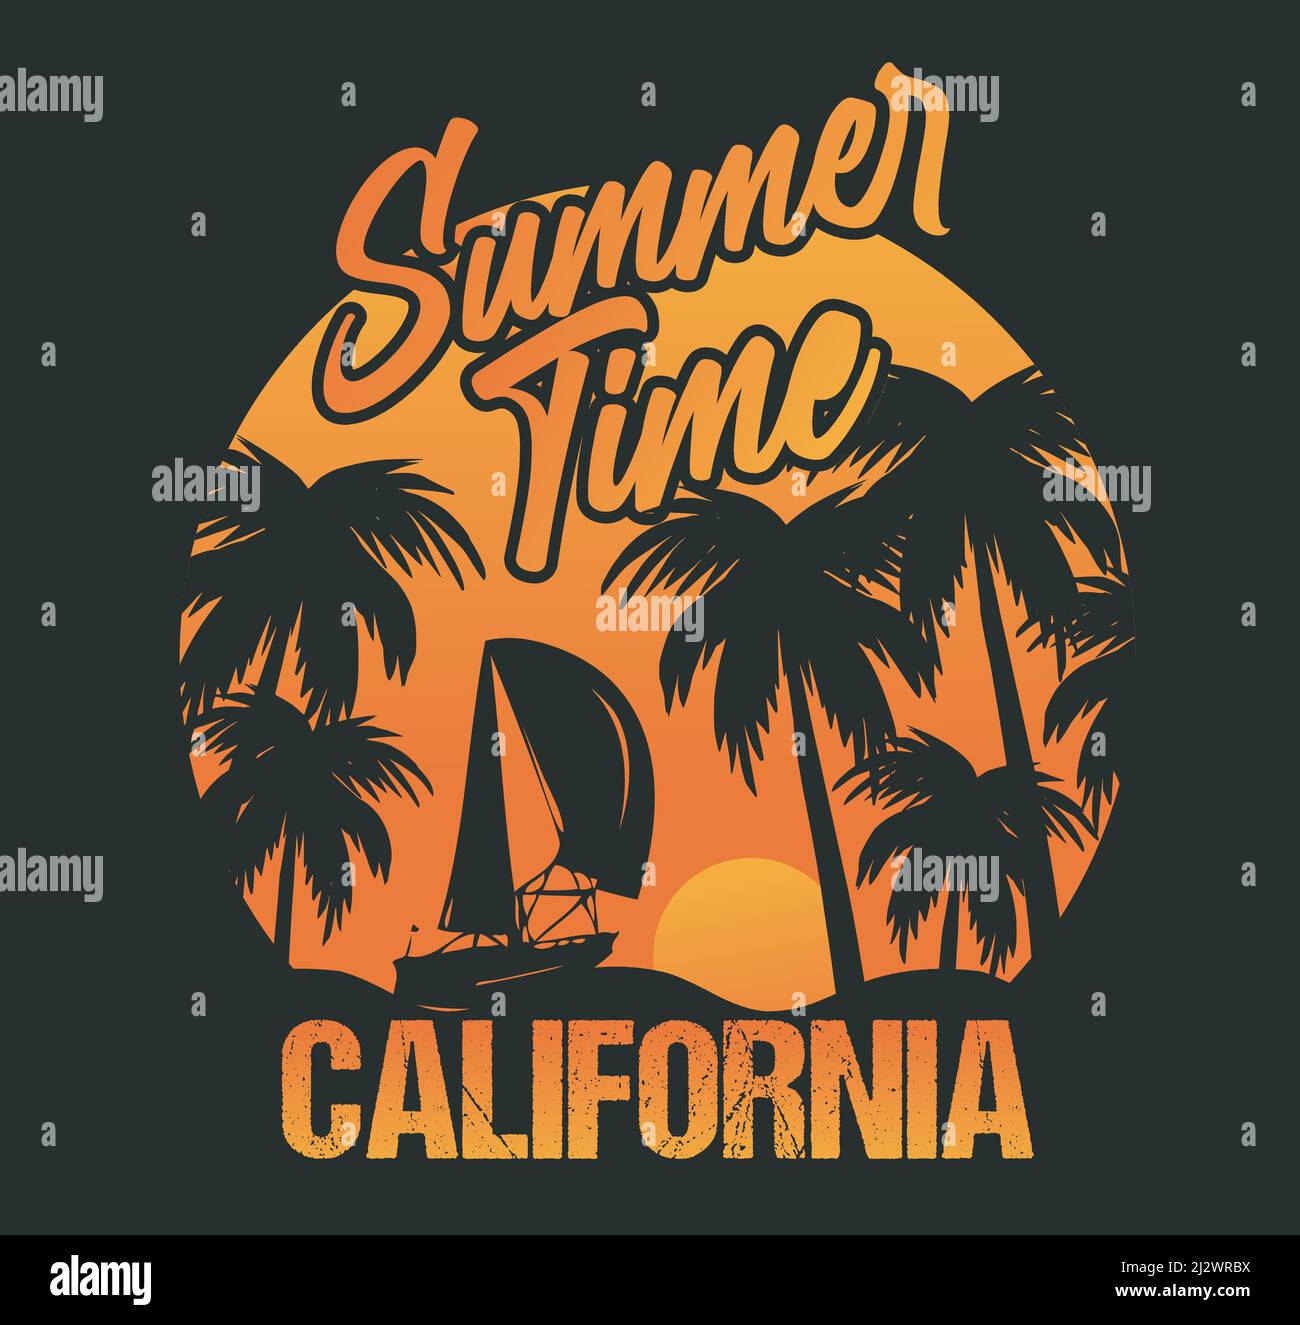 Sommerzeit California Tshirt Design Vorlage Vektordatei. Kalifornisches Strand-T-Shirt-Design Stock Vektor